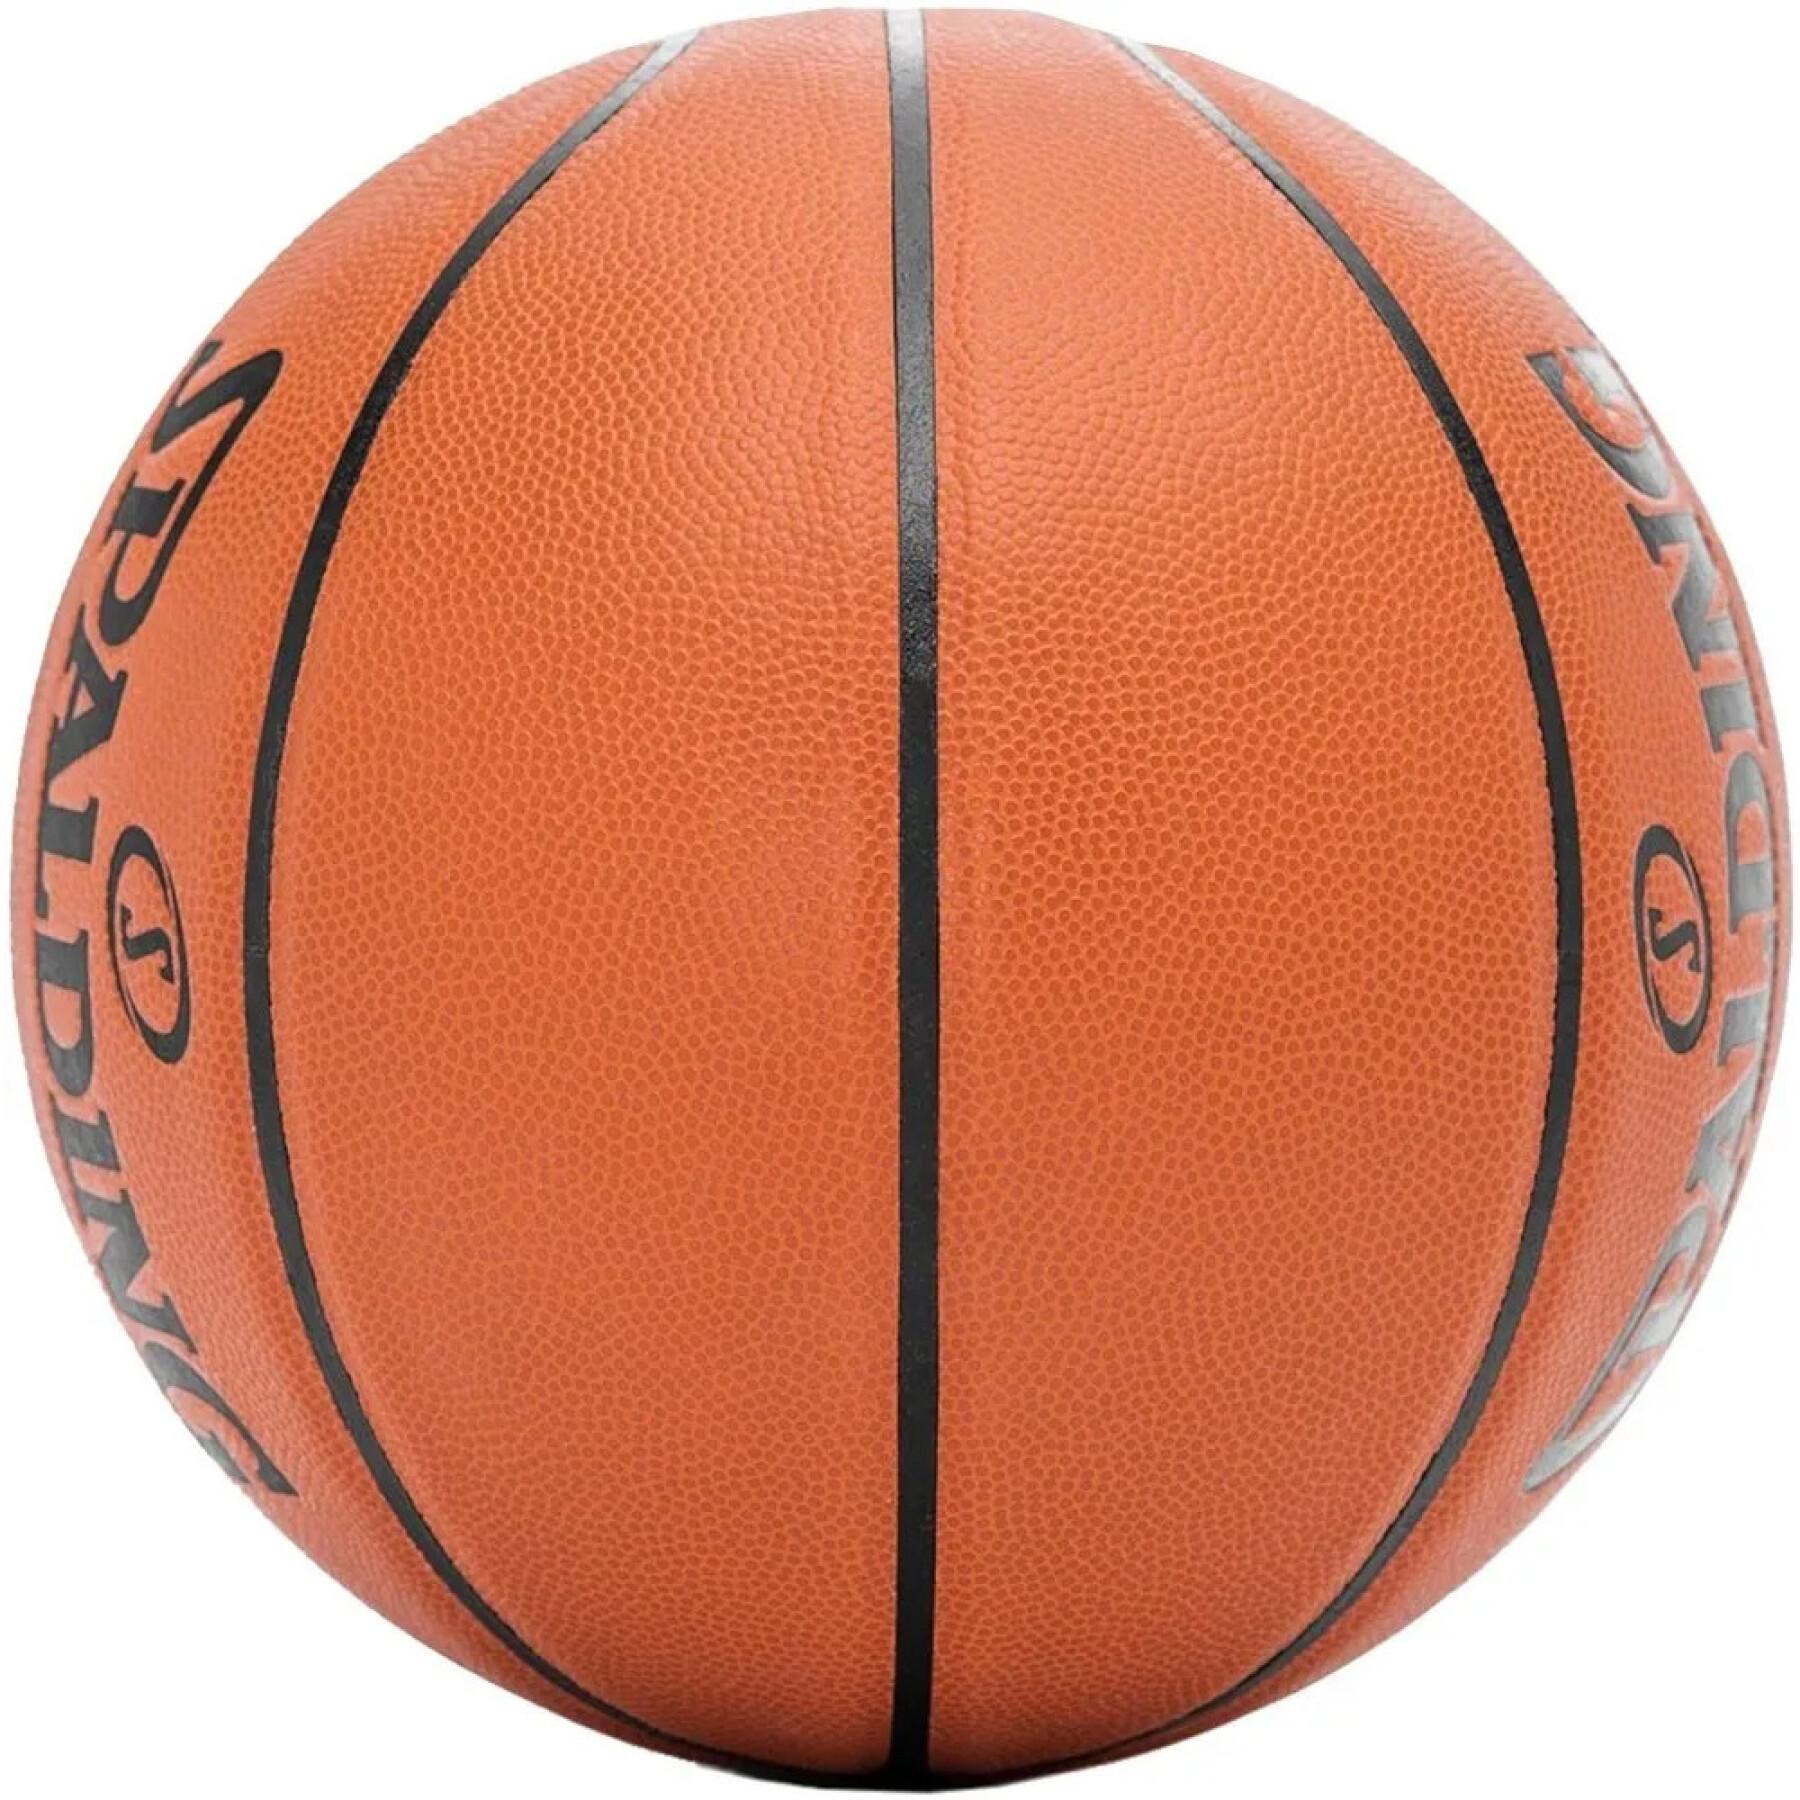 Basketbal Spalding React TF-250 Composite